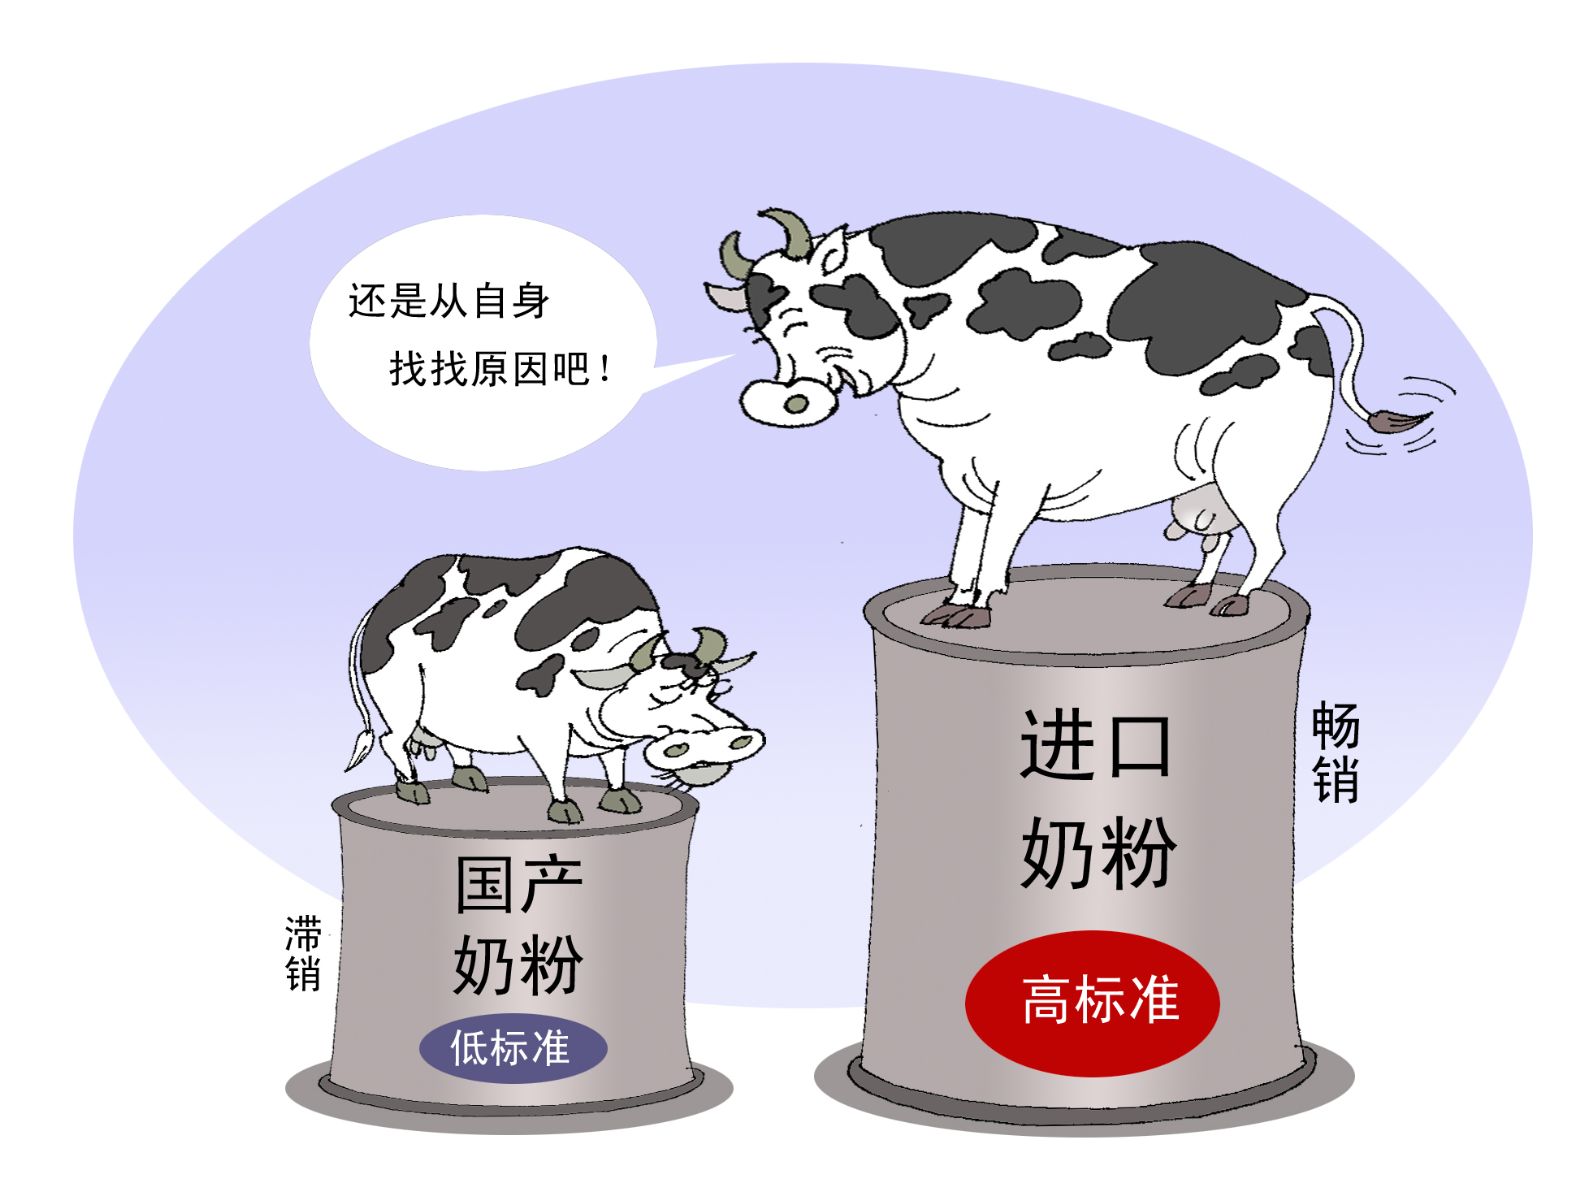 洋奶粉这样涨价，国产奶粉也开始蠢蠢欲动了。